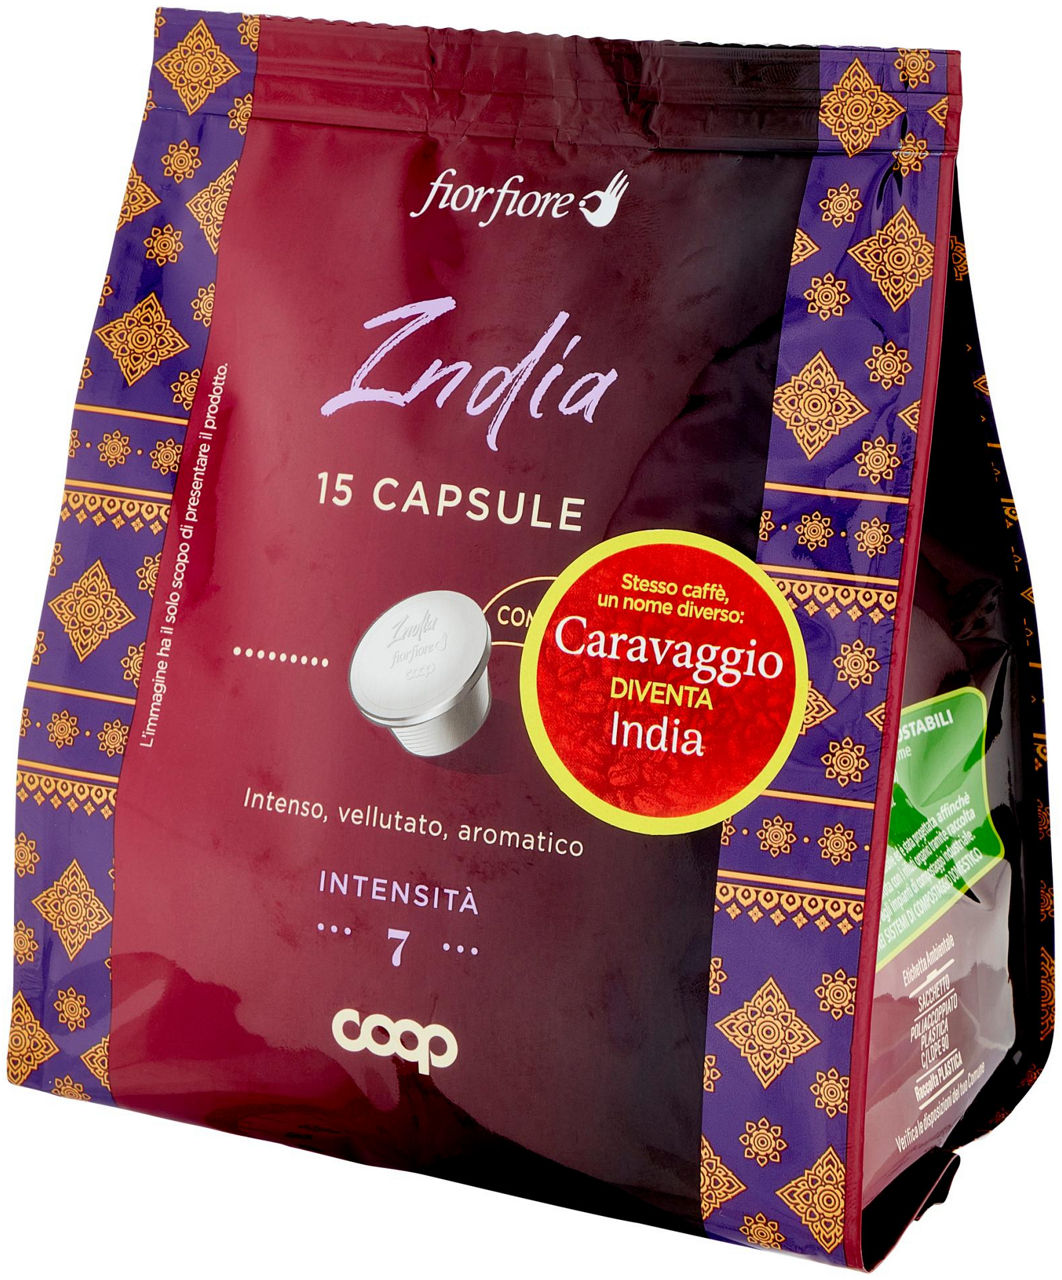 CAFFE' INDIA IN CAPSULE COMPOSTABILI "CARAVAGGIO" FIOR FIORE COOP PZ15 G 95 - 6